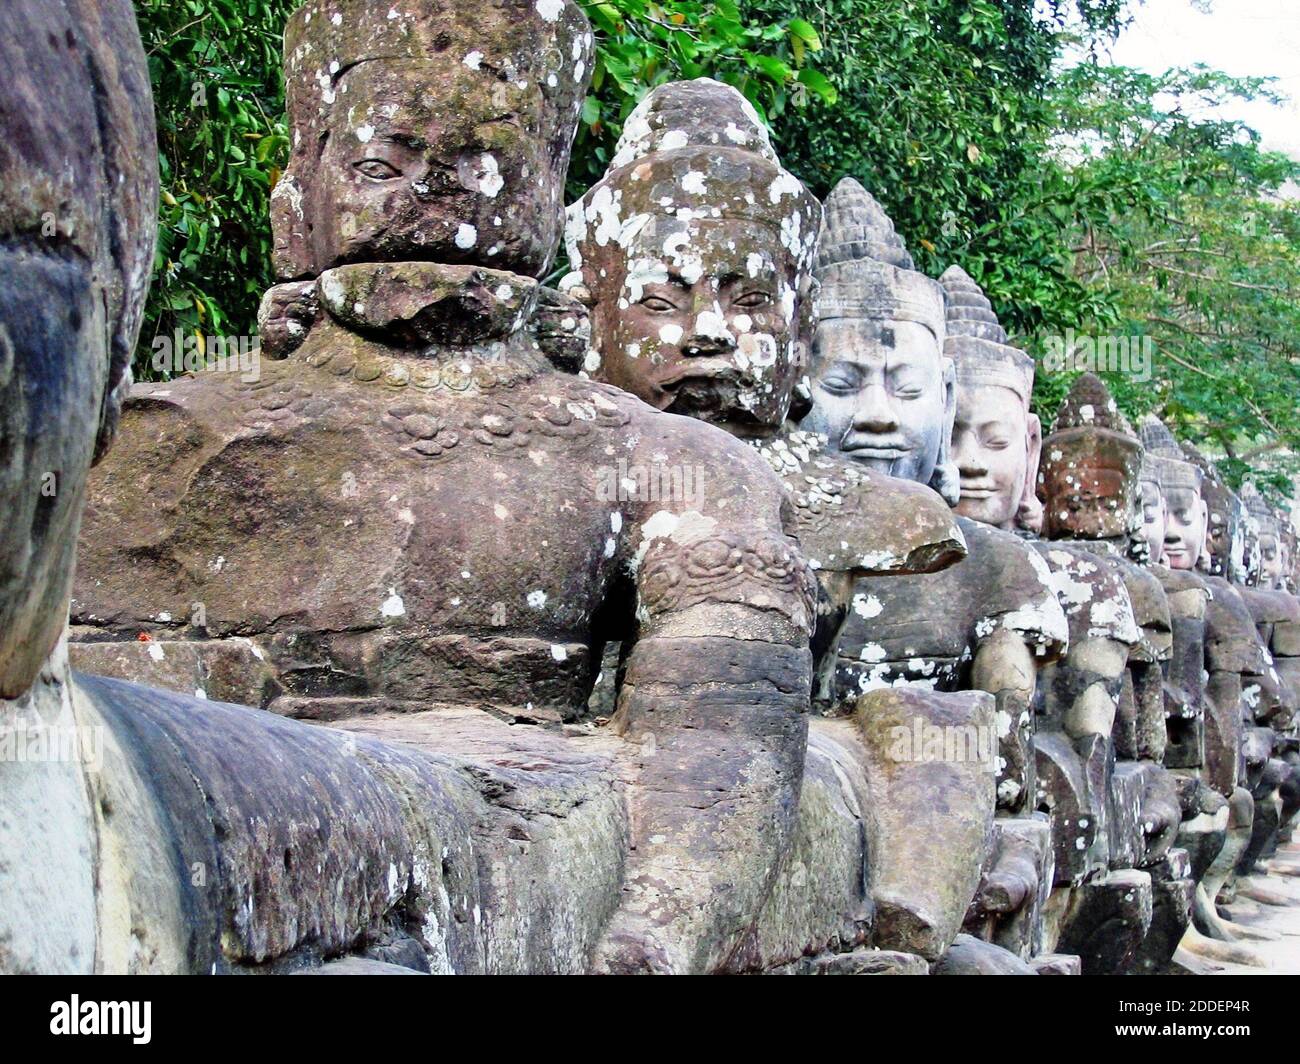 Devas, ou démigods, sont des icônes que l'on trouve dans le complexe d'Angkor Thom près de Siem Reap, au Cambodge. Angkor Thom, avec Angkor Wat, couvre plus de 400 hectares et est considéré comme le plus grand monument religieux au monde. D'abord un complexe de temple hindou, il est passé à un bouddhiste avec la ville en fin de fonctionnalité en 1431. Le complexe du temple a été redécouvert dans les années 1990 et a été un site archéologique, et une attraction touristique majeure, depuis lors. Les Devas en pierre protègent la chaussée menant à Angkor Thom. Banque D'Images